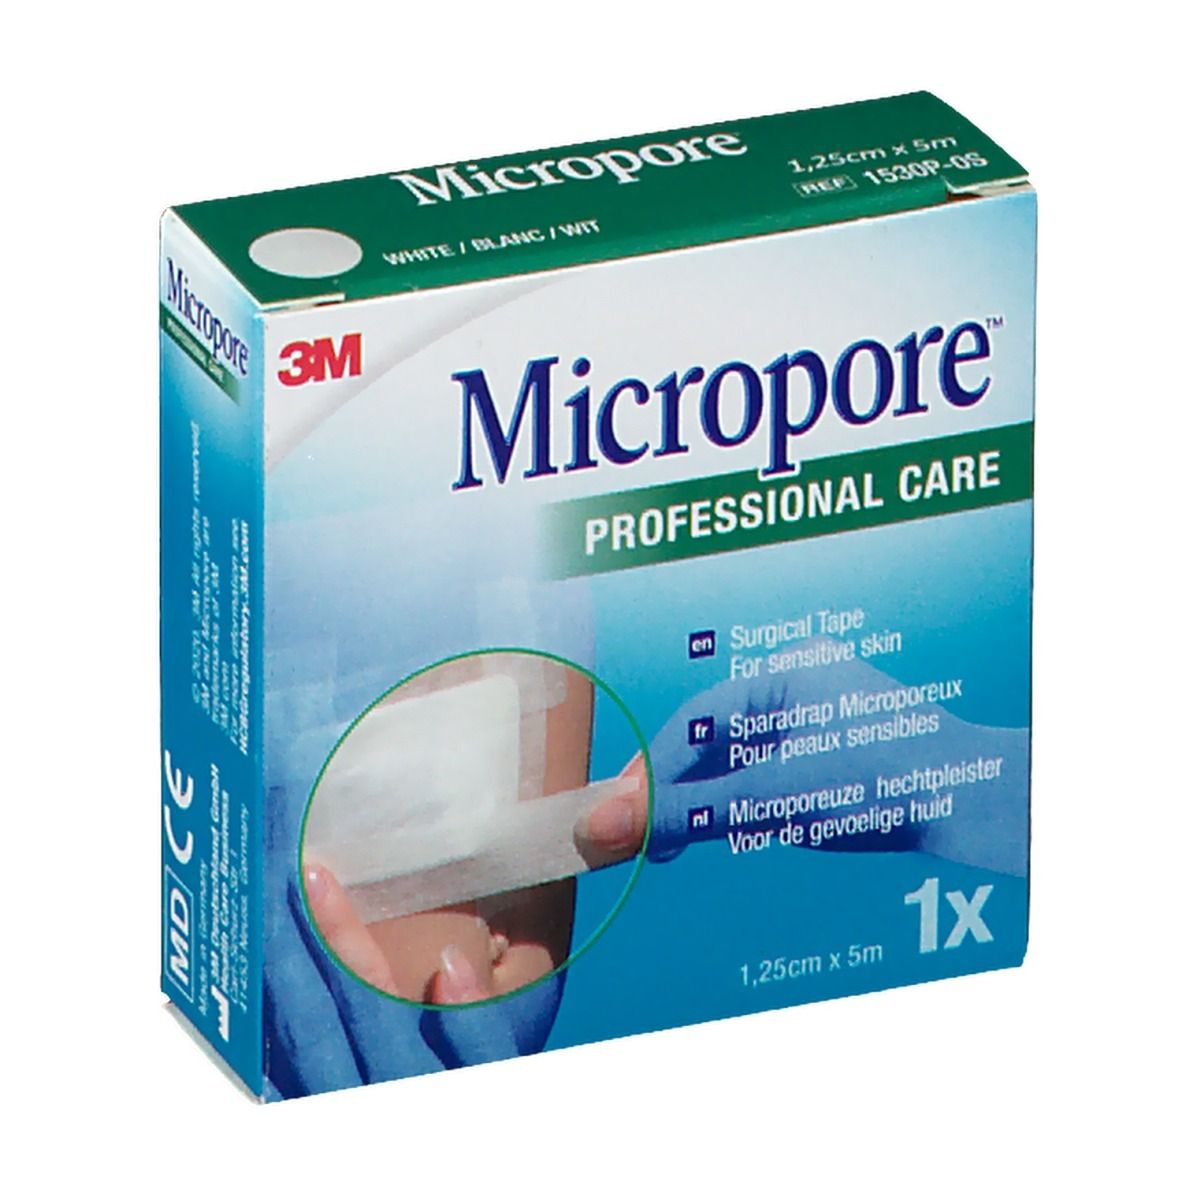 3M Micropore™ Sparadrap microporeux 5 m x 1,25 cm